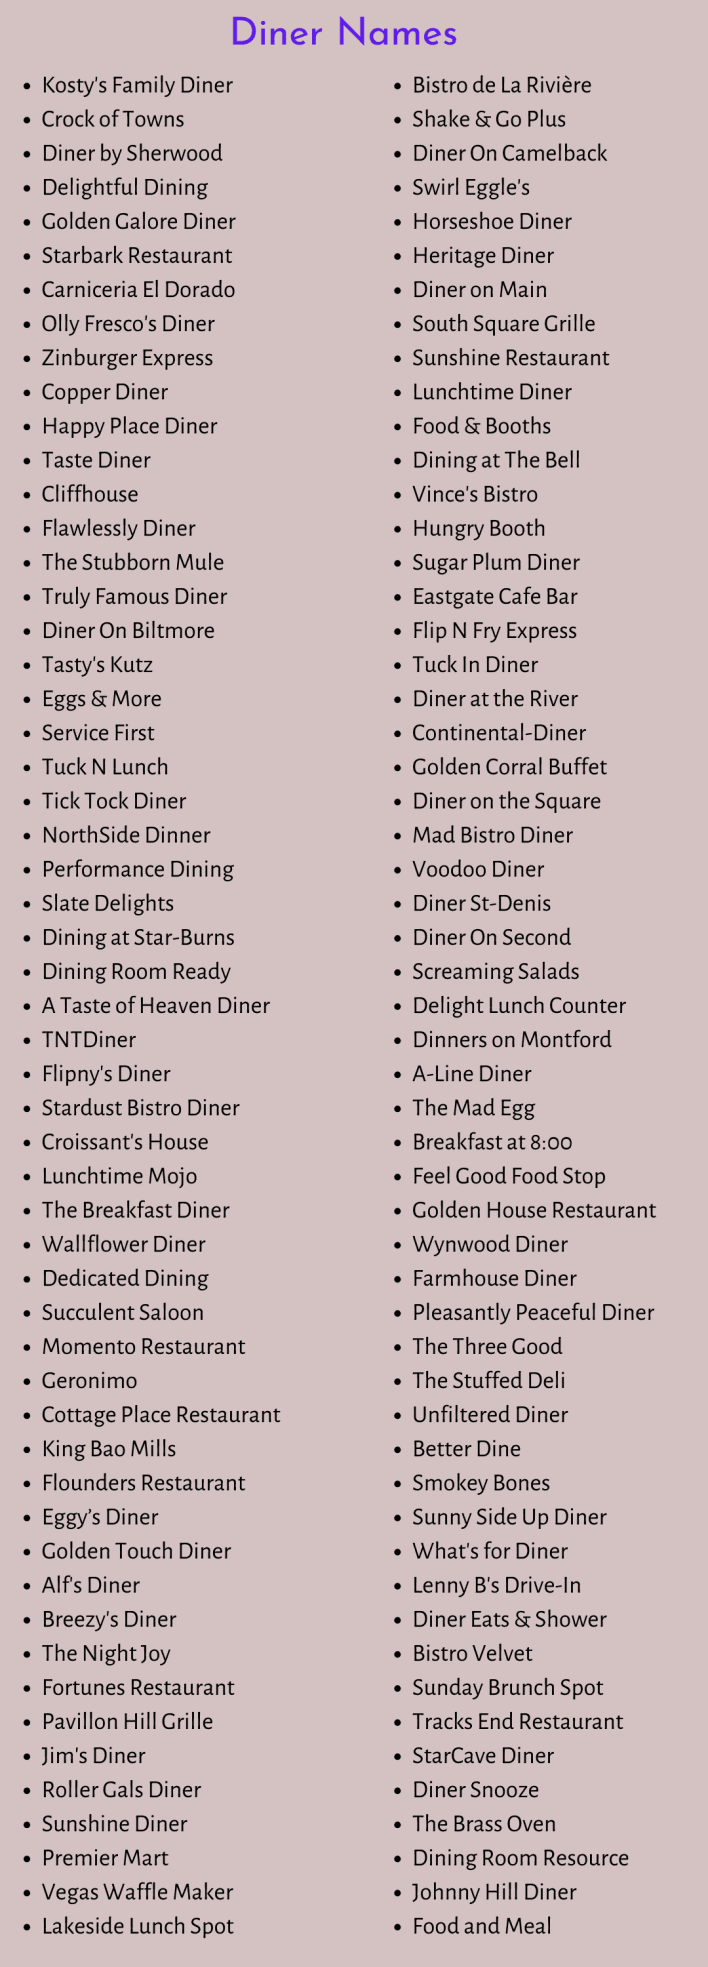 Diner Names